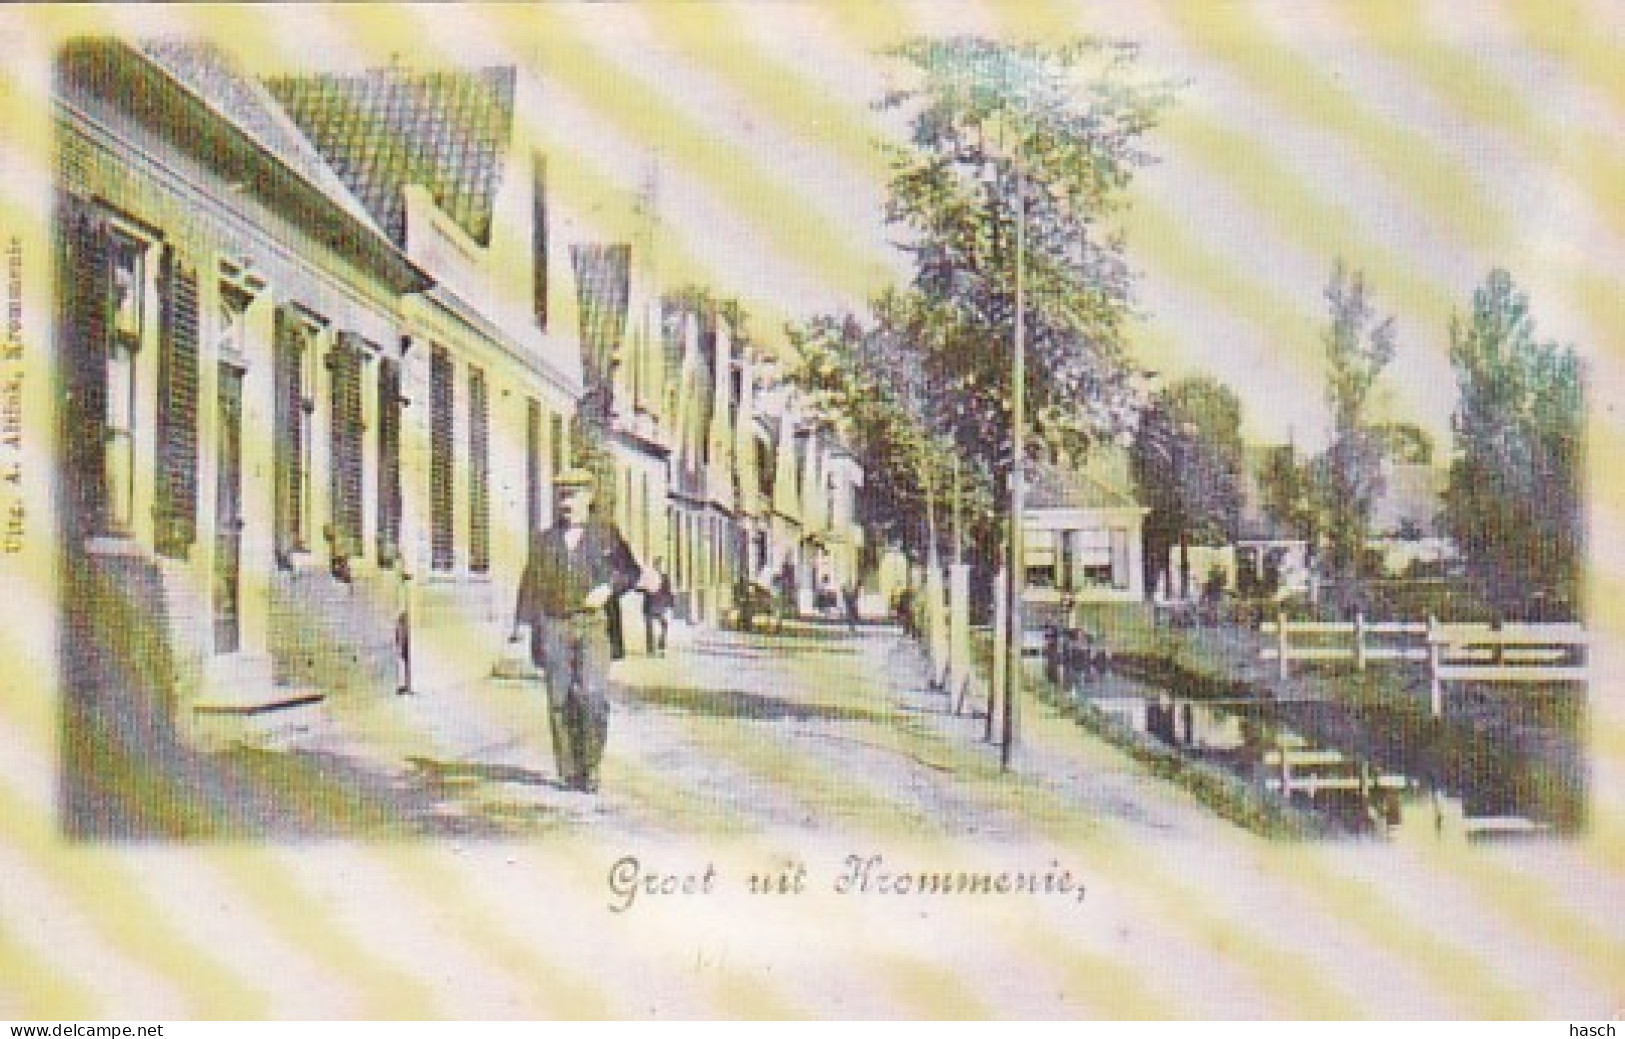 4844555Krommenie, Groet Uit Krommenie Rond 1900. - Krommenie